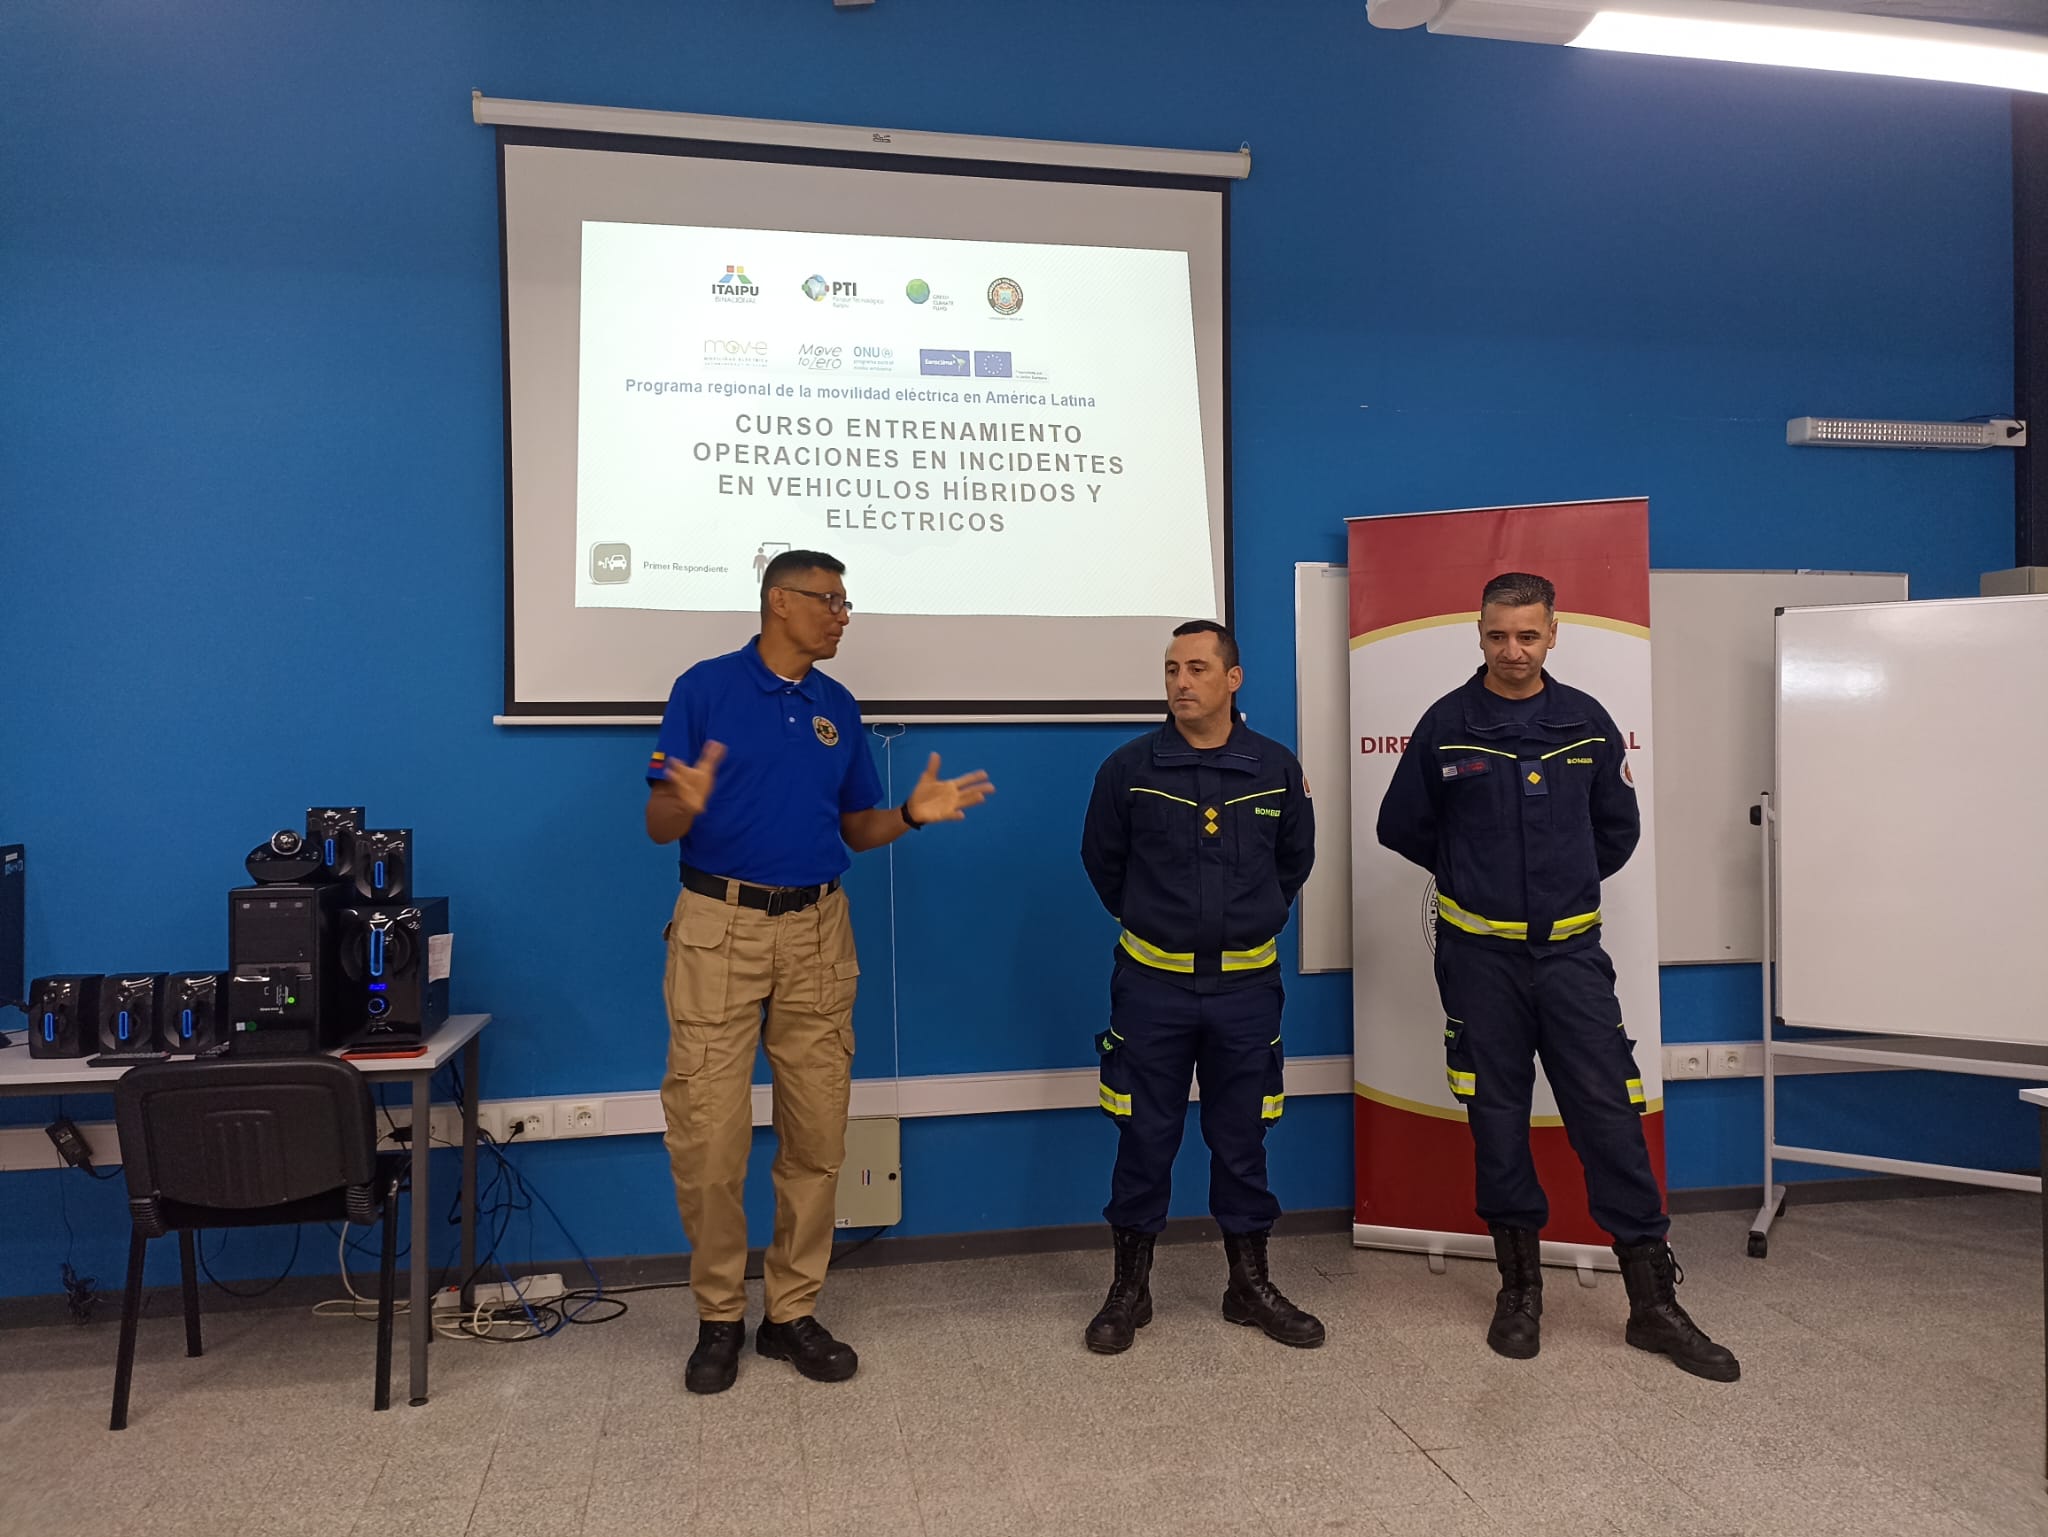 IMG_20230509_16000.jpeg - El pasado jueves 11 de mayo culminó la &#034;Capacitación para bomberos sobre manejo de incidentes relacionados con la movilidad eléctrica&#034; en donde se capacitaron a 25 bomberos en la Base Aérea de Santa Bernardina del departamento de Durazno. Esta capacitación es la continuación del primer curso regional que organizó la plataforma MOVE del Programa de la Naciones Unidas para el Medio Ambiente a finales de 2022 en Paraguay, donde participaron y se formaron dos bomberos instructores de Uruguay.